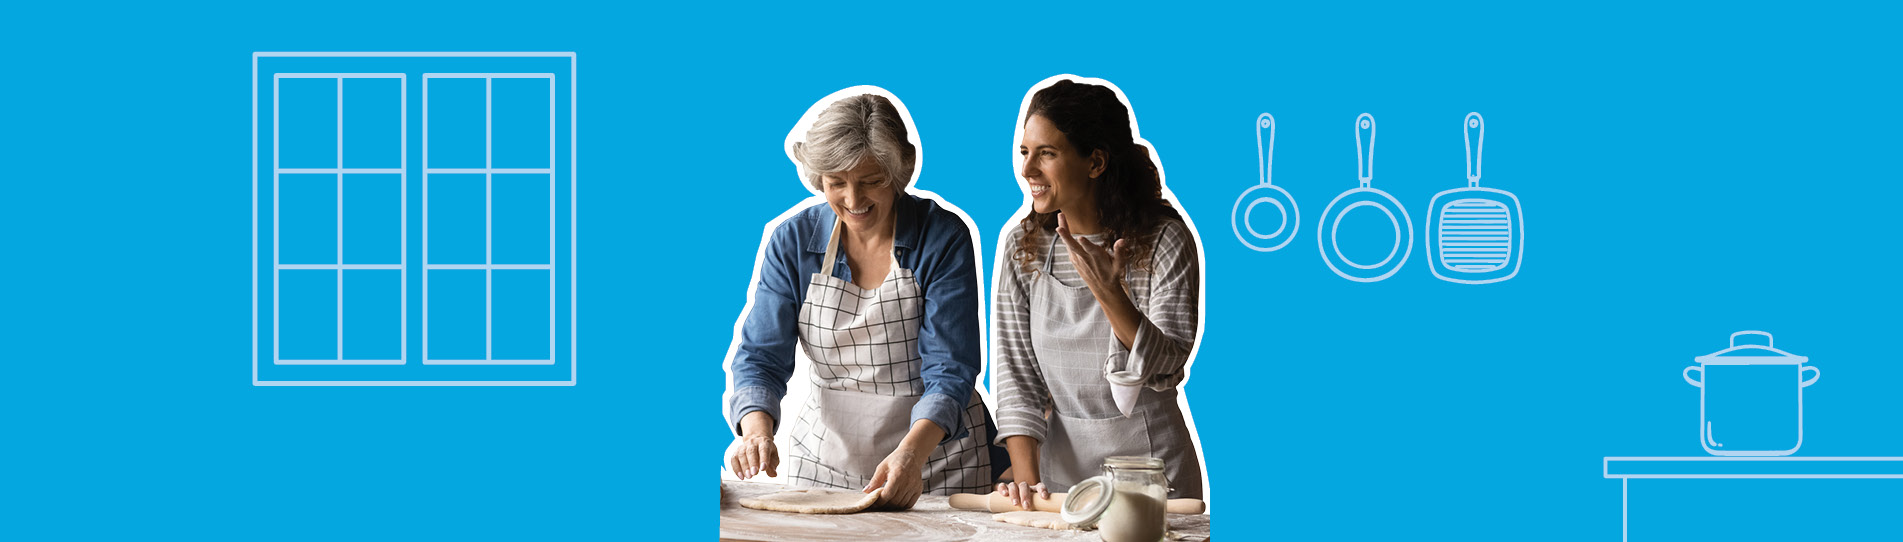 smiling women rolling dough